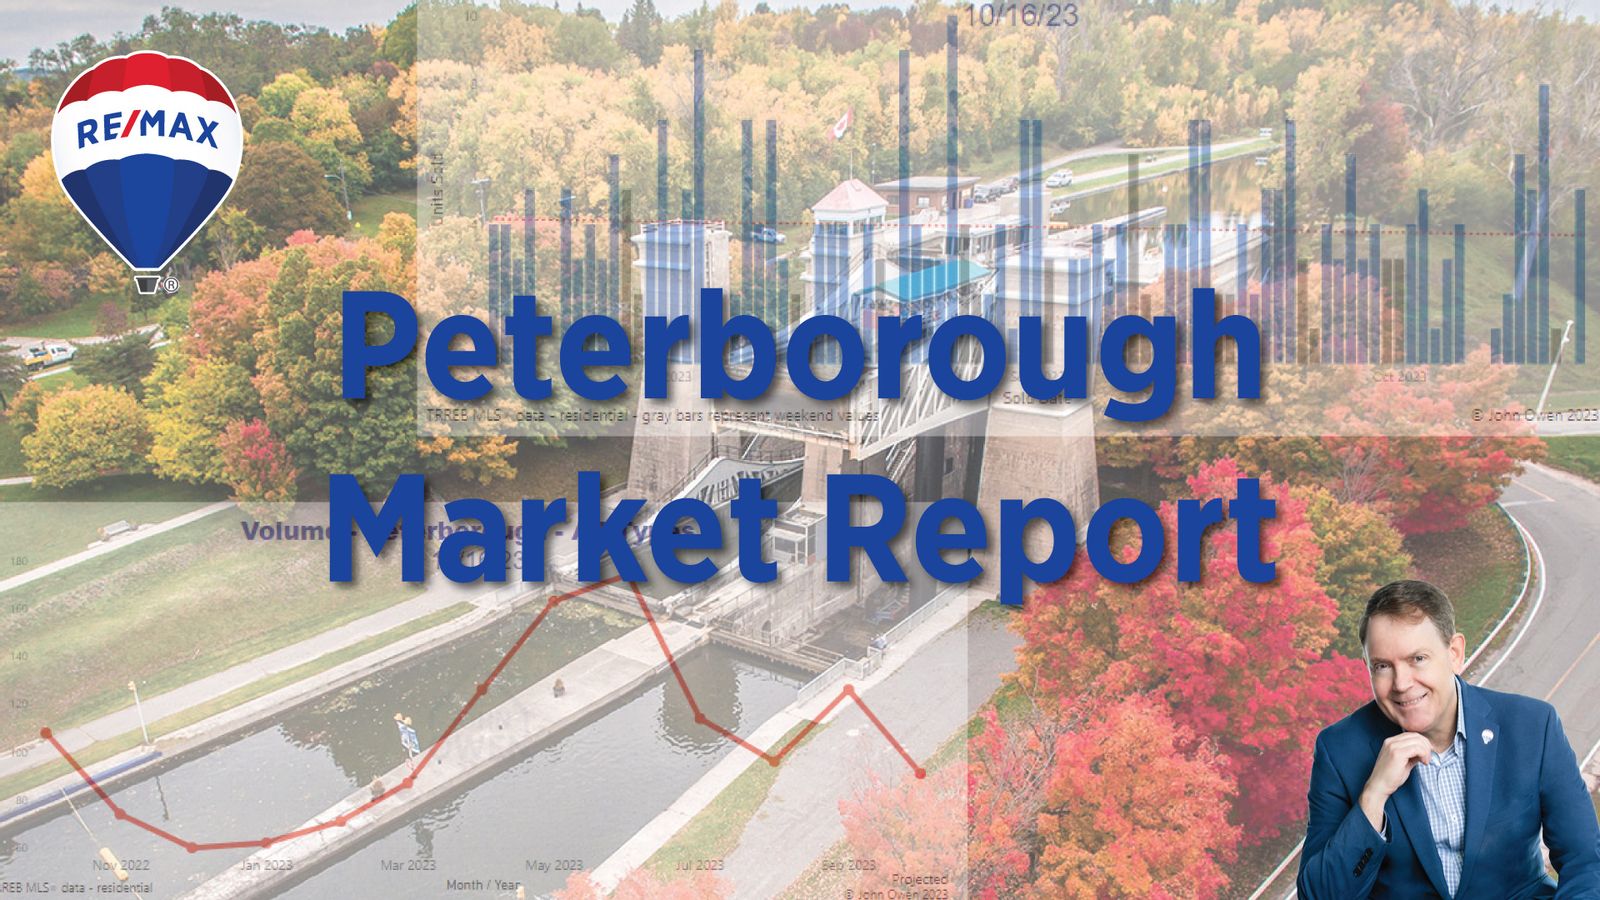 Peterborough Real Estate Market Report - May 2023